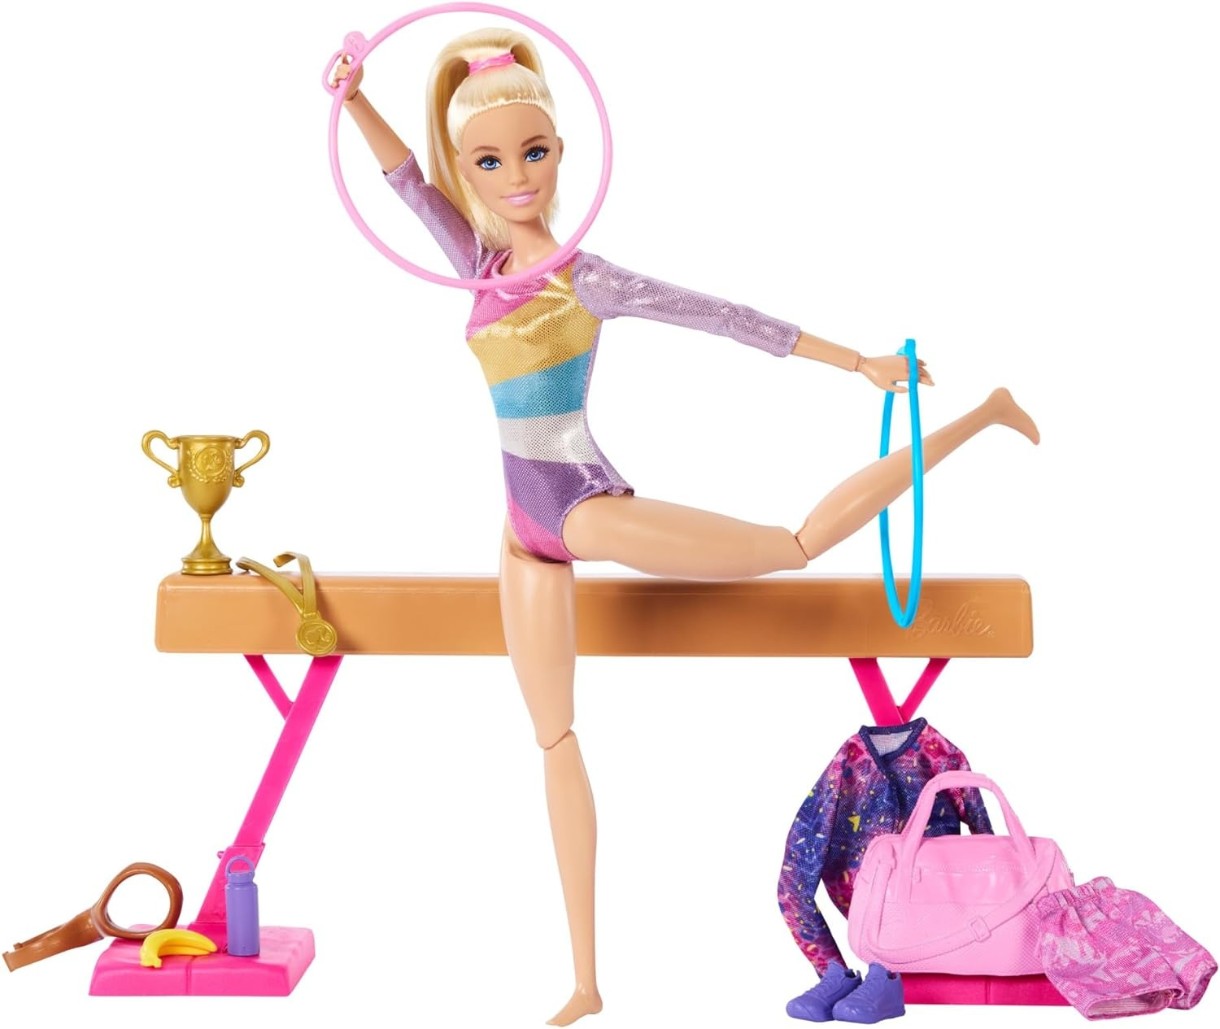 Păpușa Barbie Gymnastics Doll HRG52